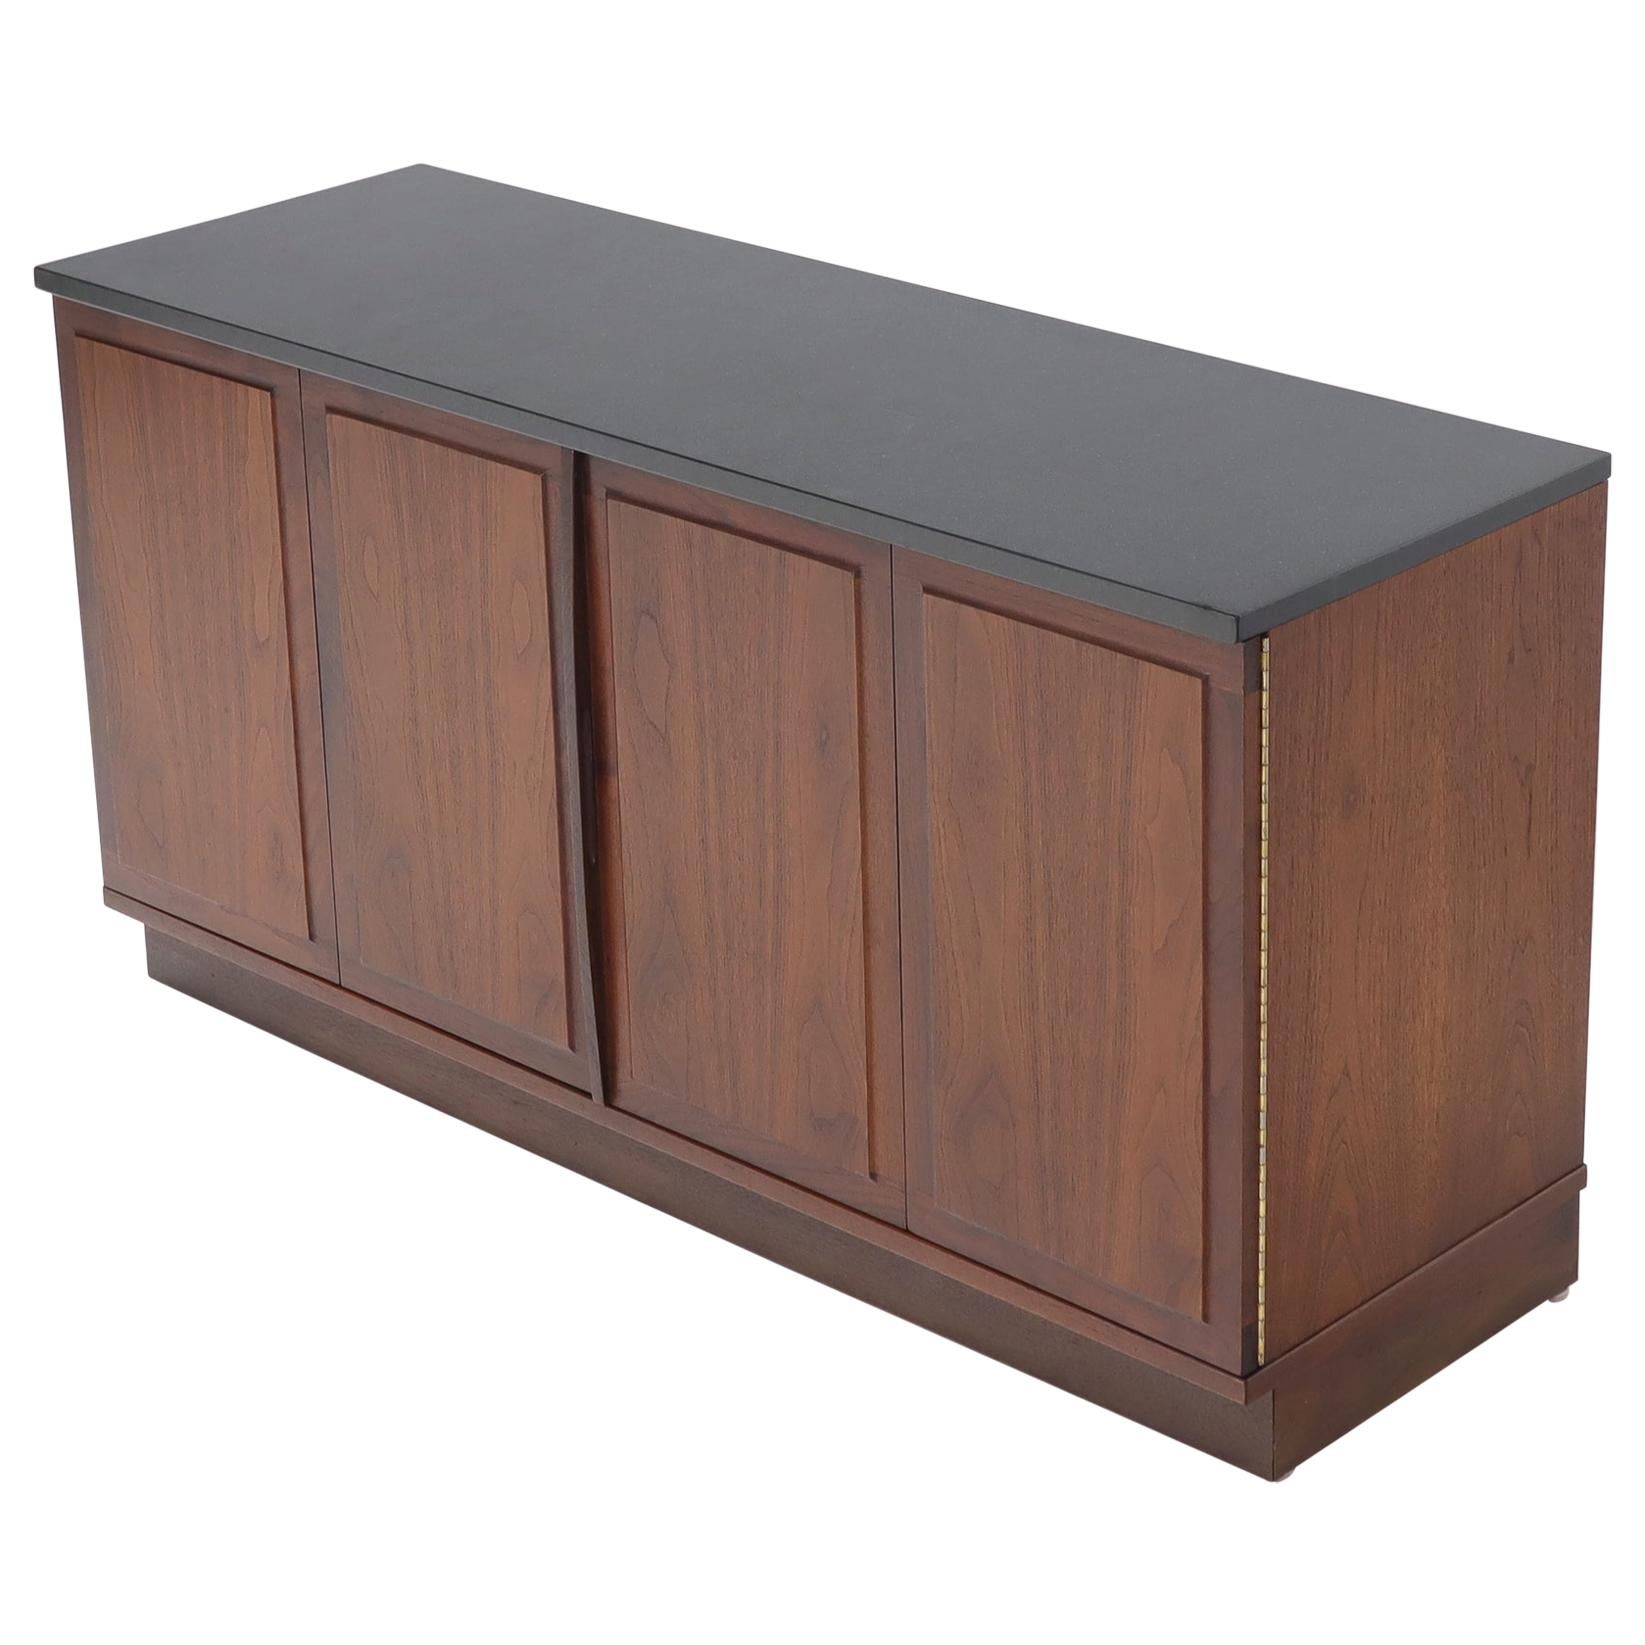 Petit meuble crédence en noyer avec dessus en ardoise TV Stand Cabinet Console Table